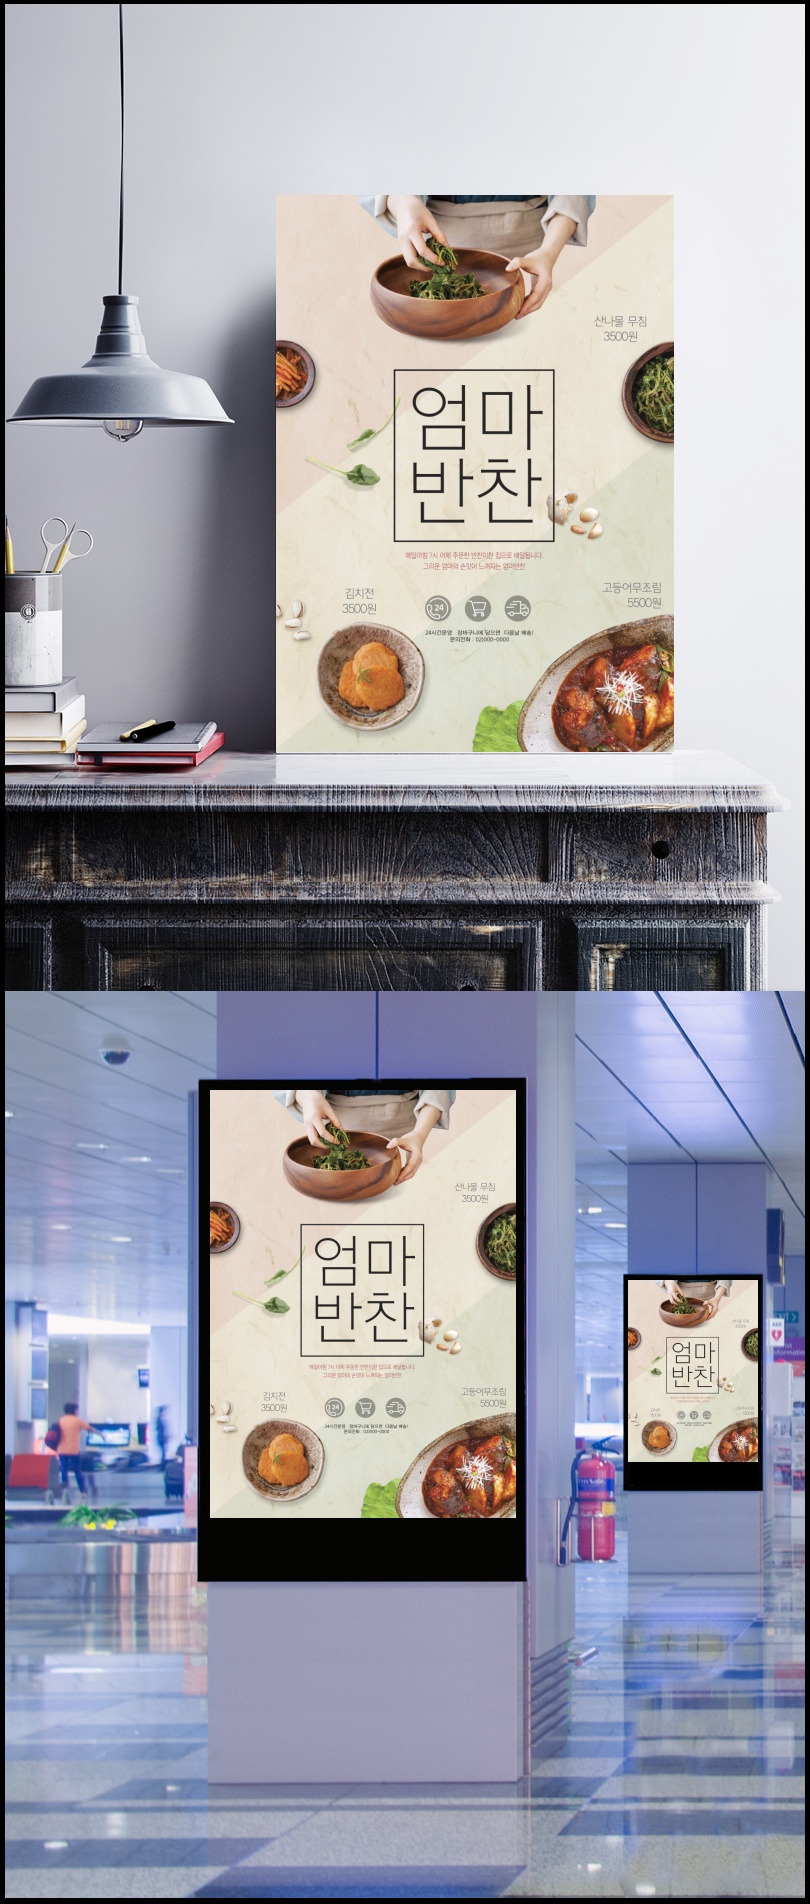 南瓜饼_腌菜_年糕_韩国美食_餐饮美食海报设计PSD_ti338a6201